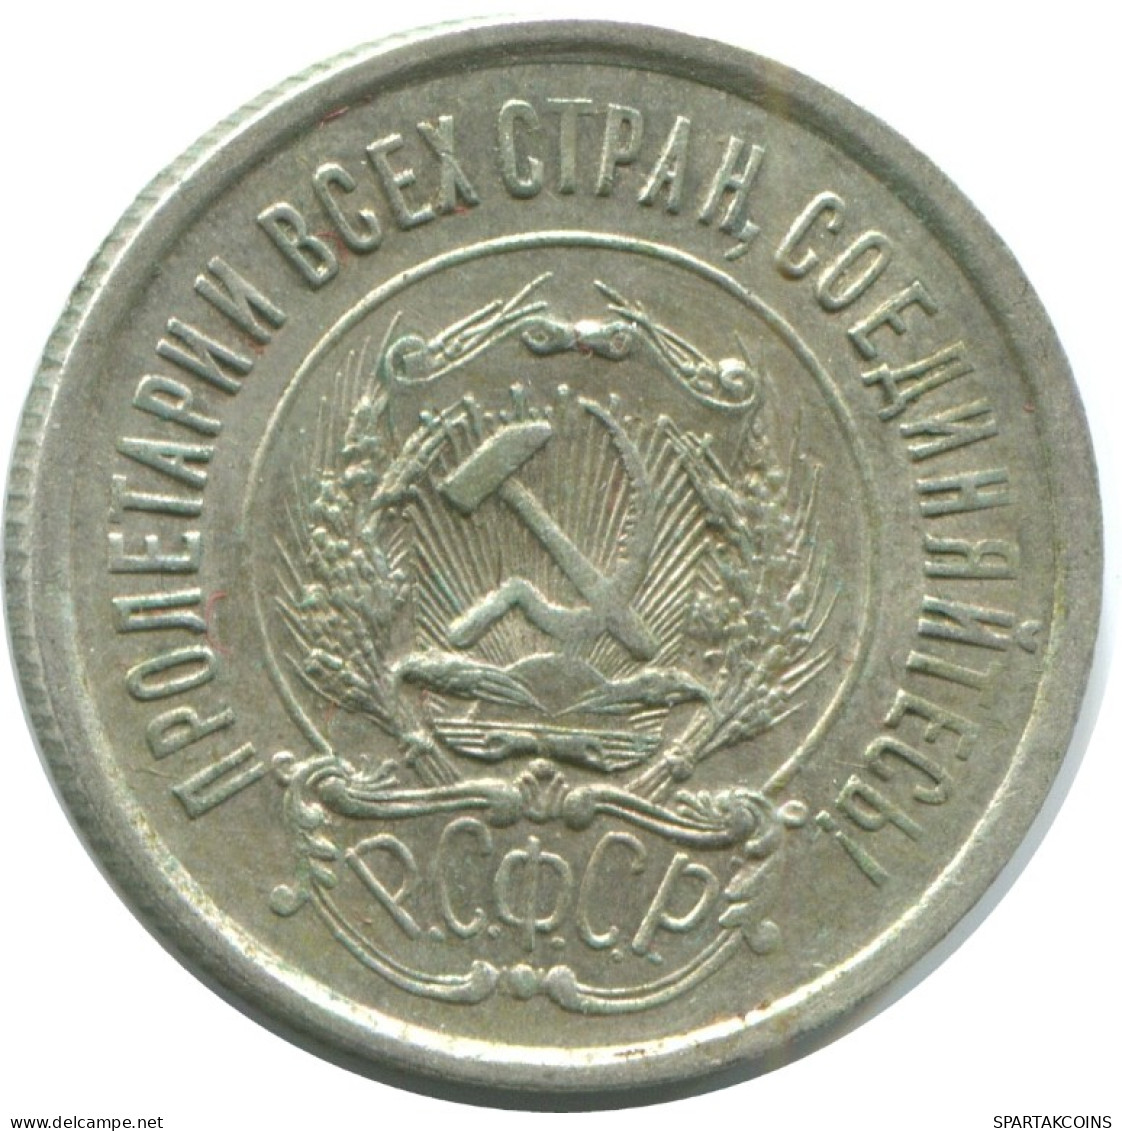 20 KOPEKS 1923 RUSSIA RSFSR SILVER Coin HIGH GRADE #AF460.4.U.A - Russland